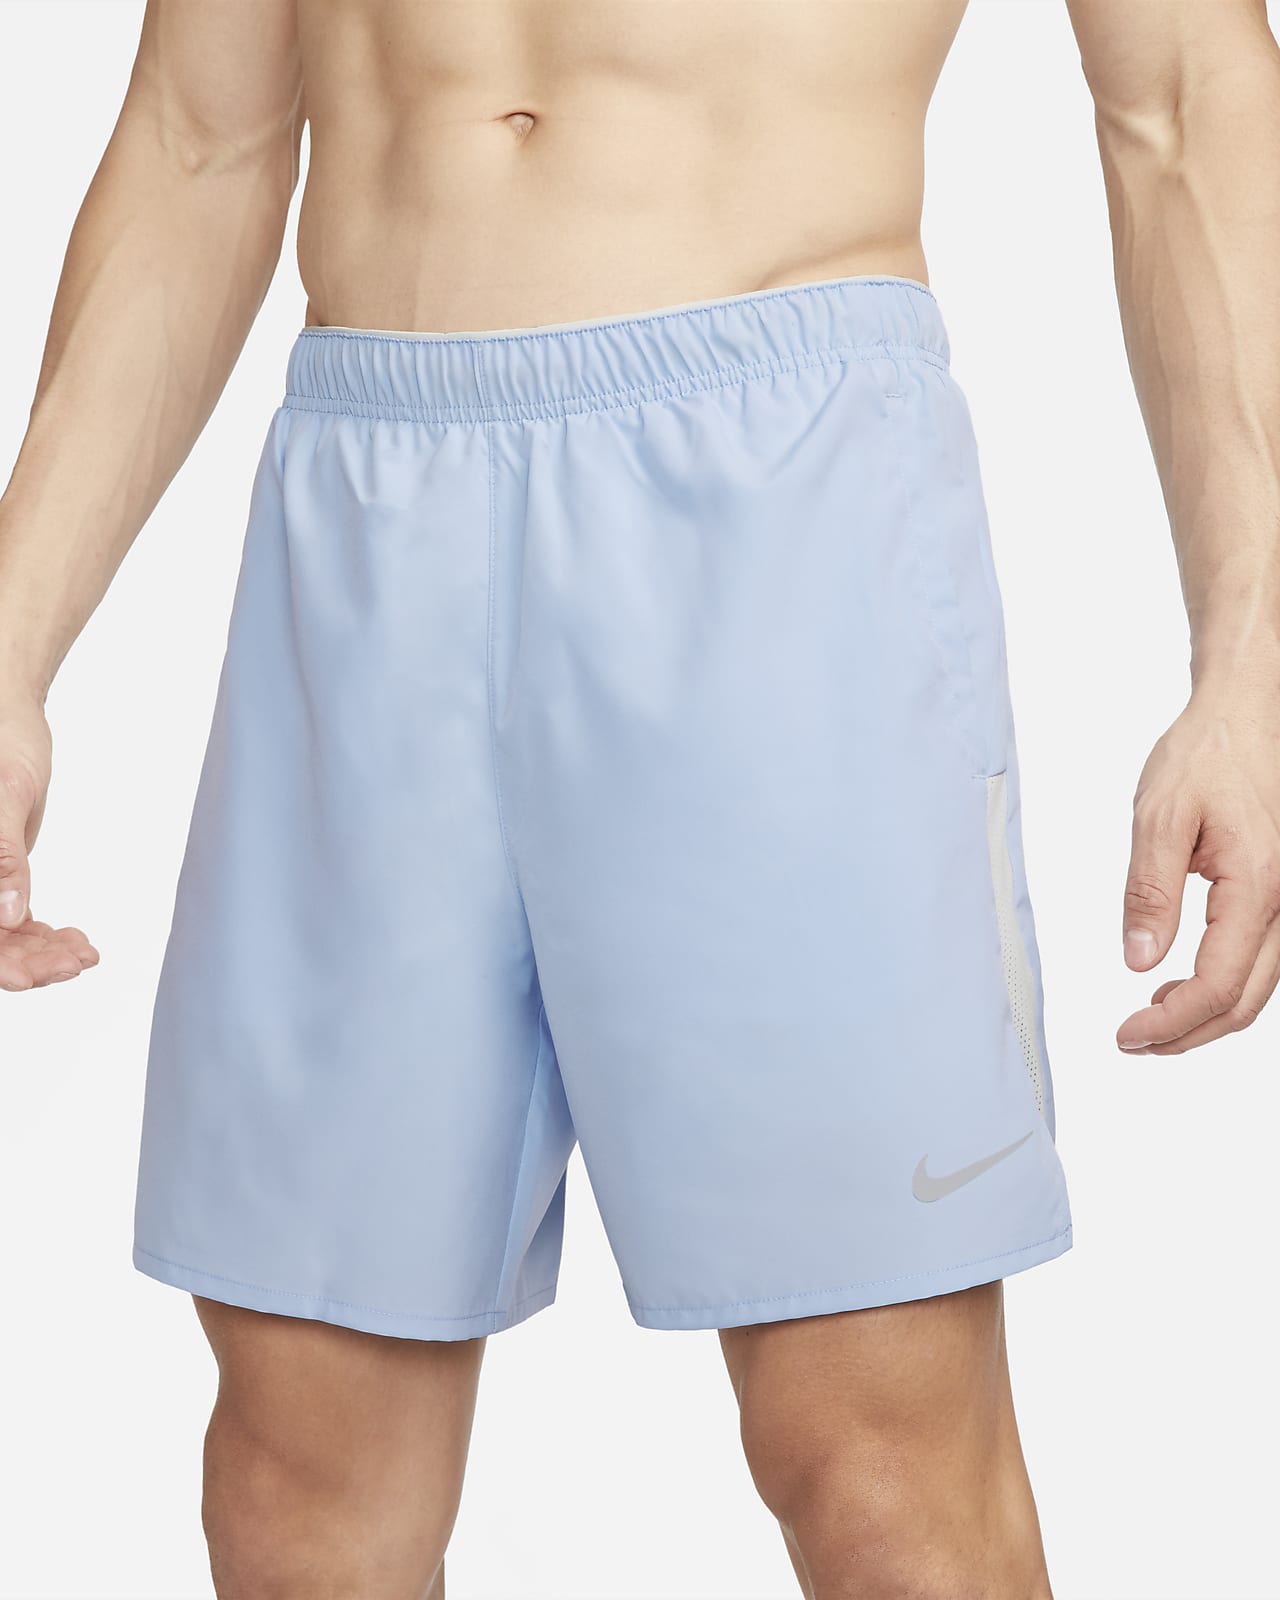 Nike, Shorts, Nike Mens Light Blue Drifit Shorts